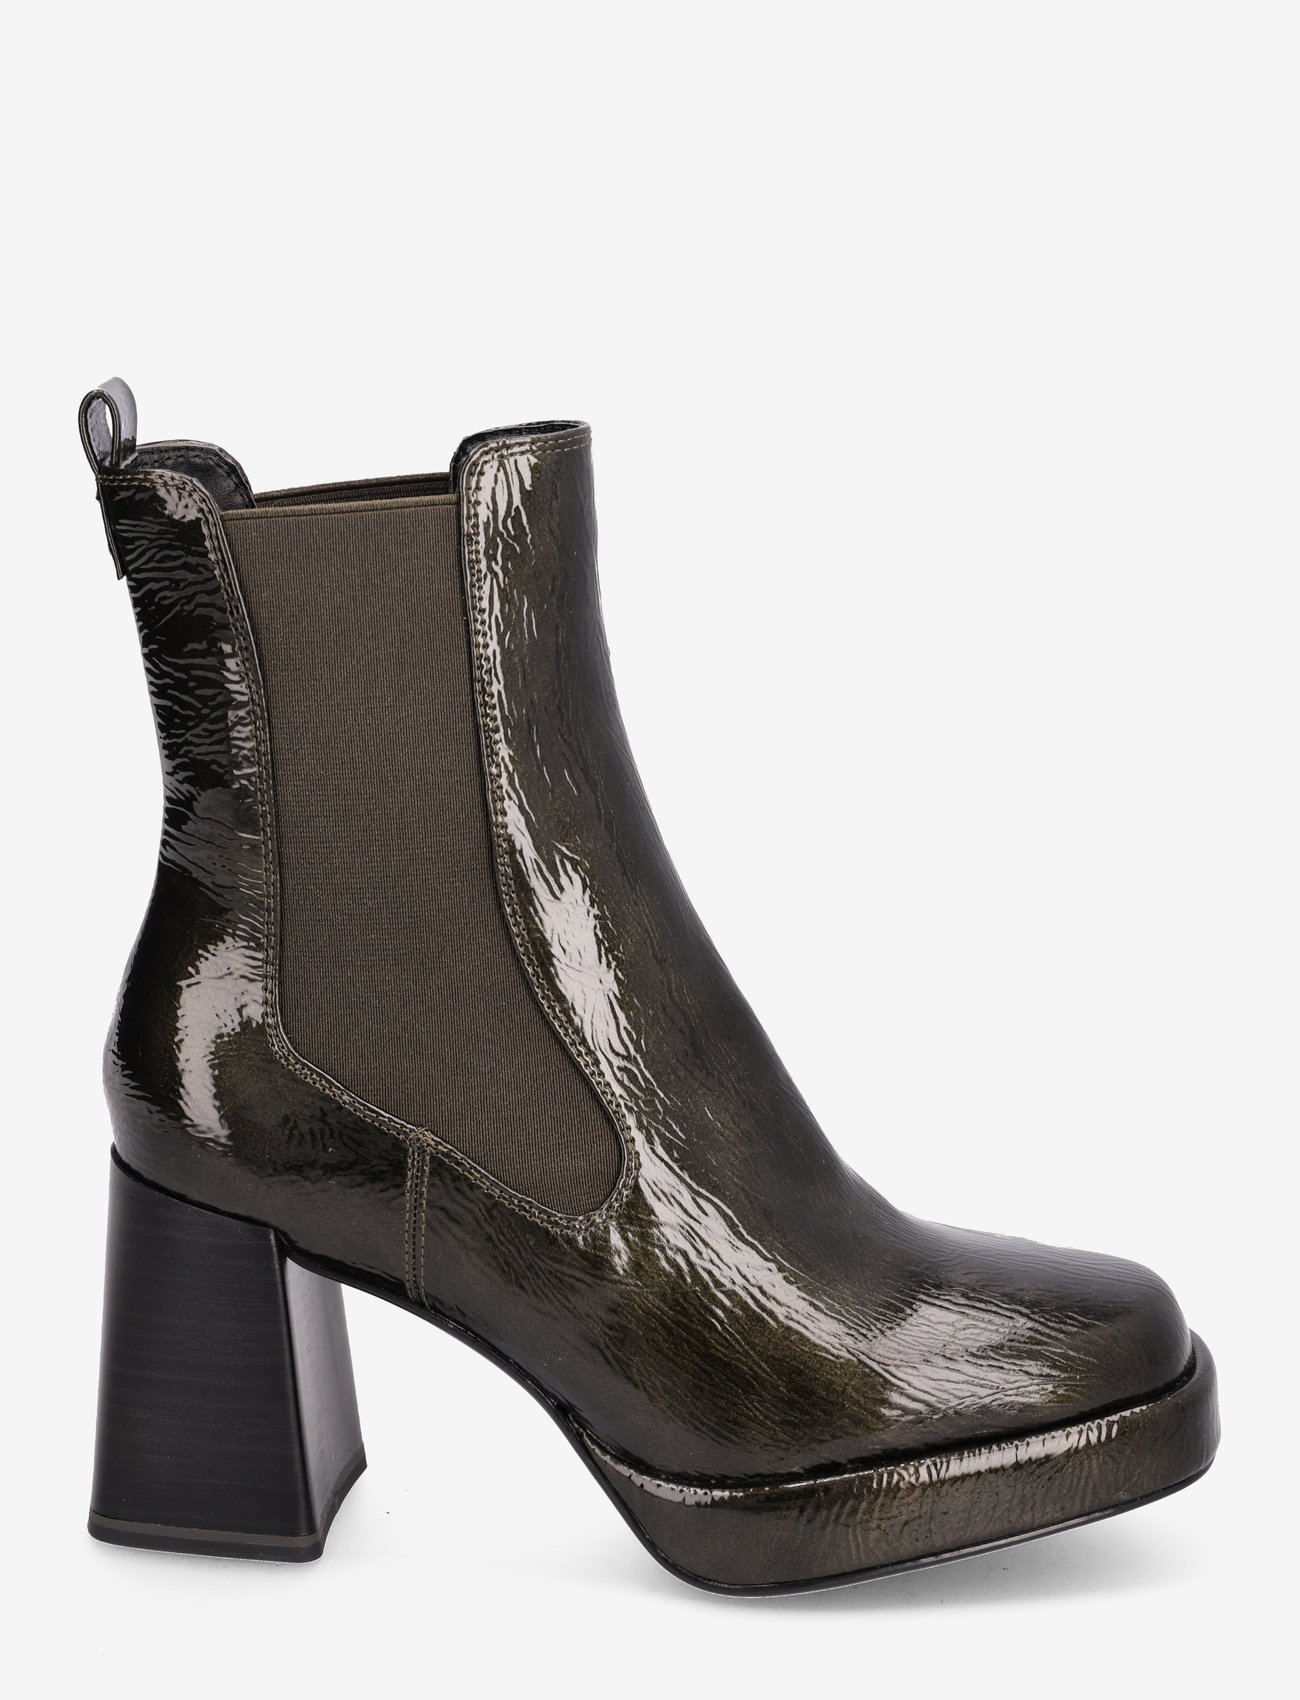 Tamaris - Women Boots - hoge hakken - olive - 1